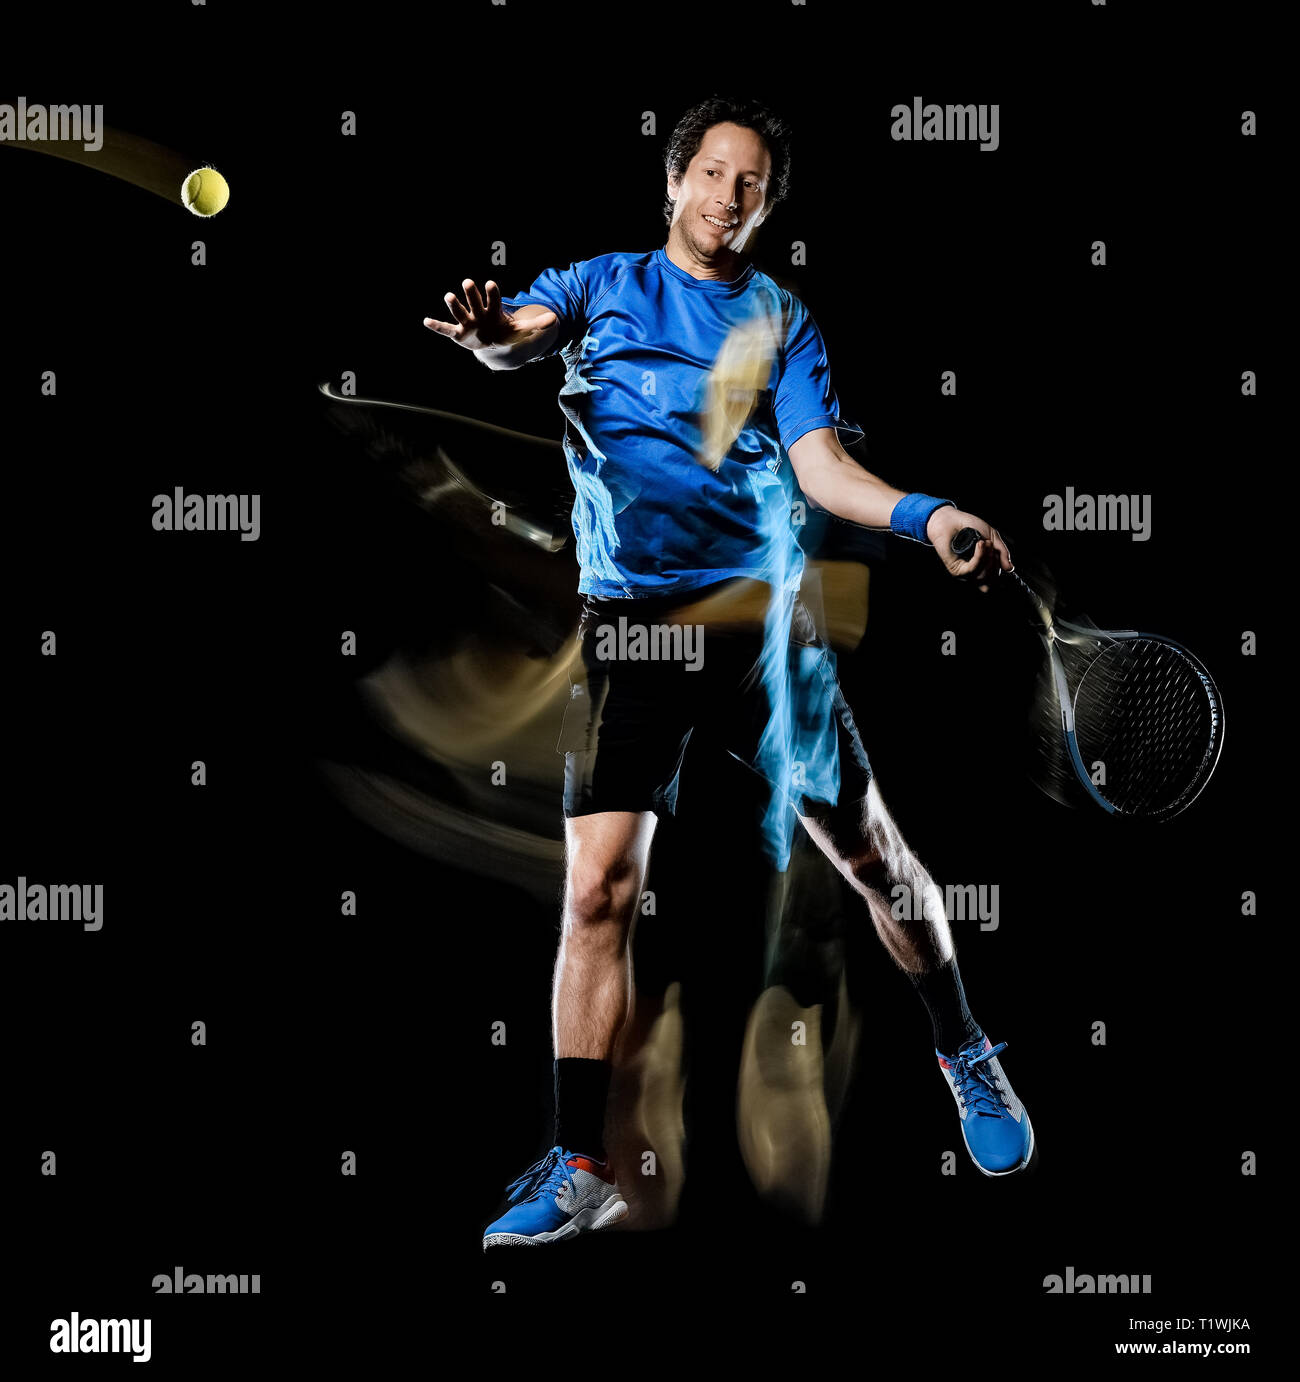 Un joueur de tennis homme de race blanche fond noir isolé en light painting speed motion Banque D'Images